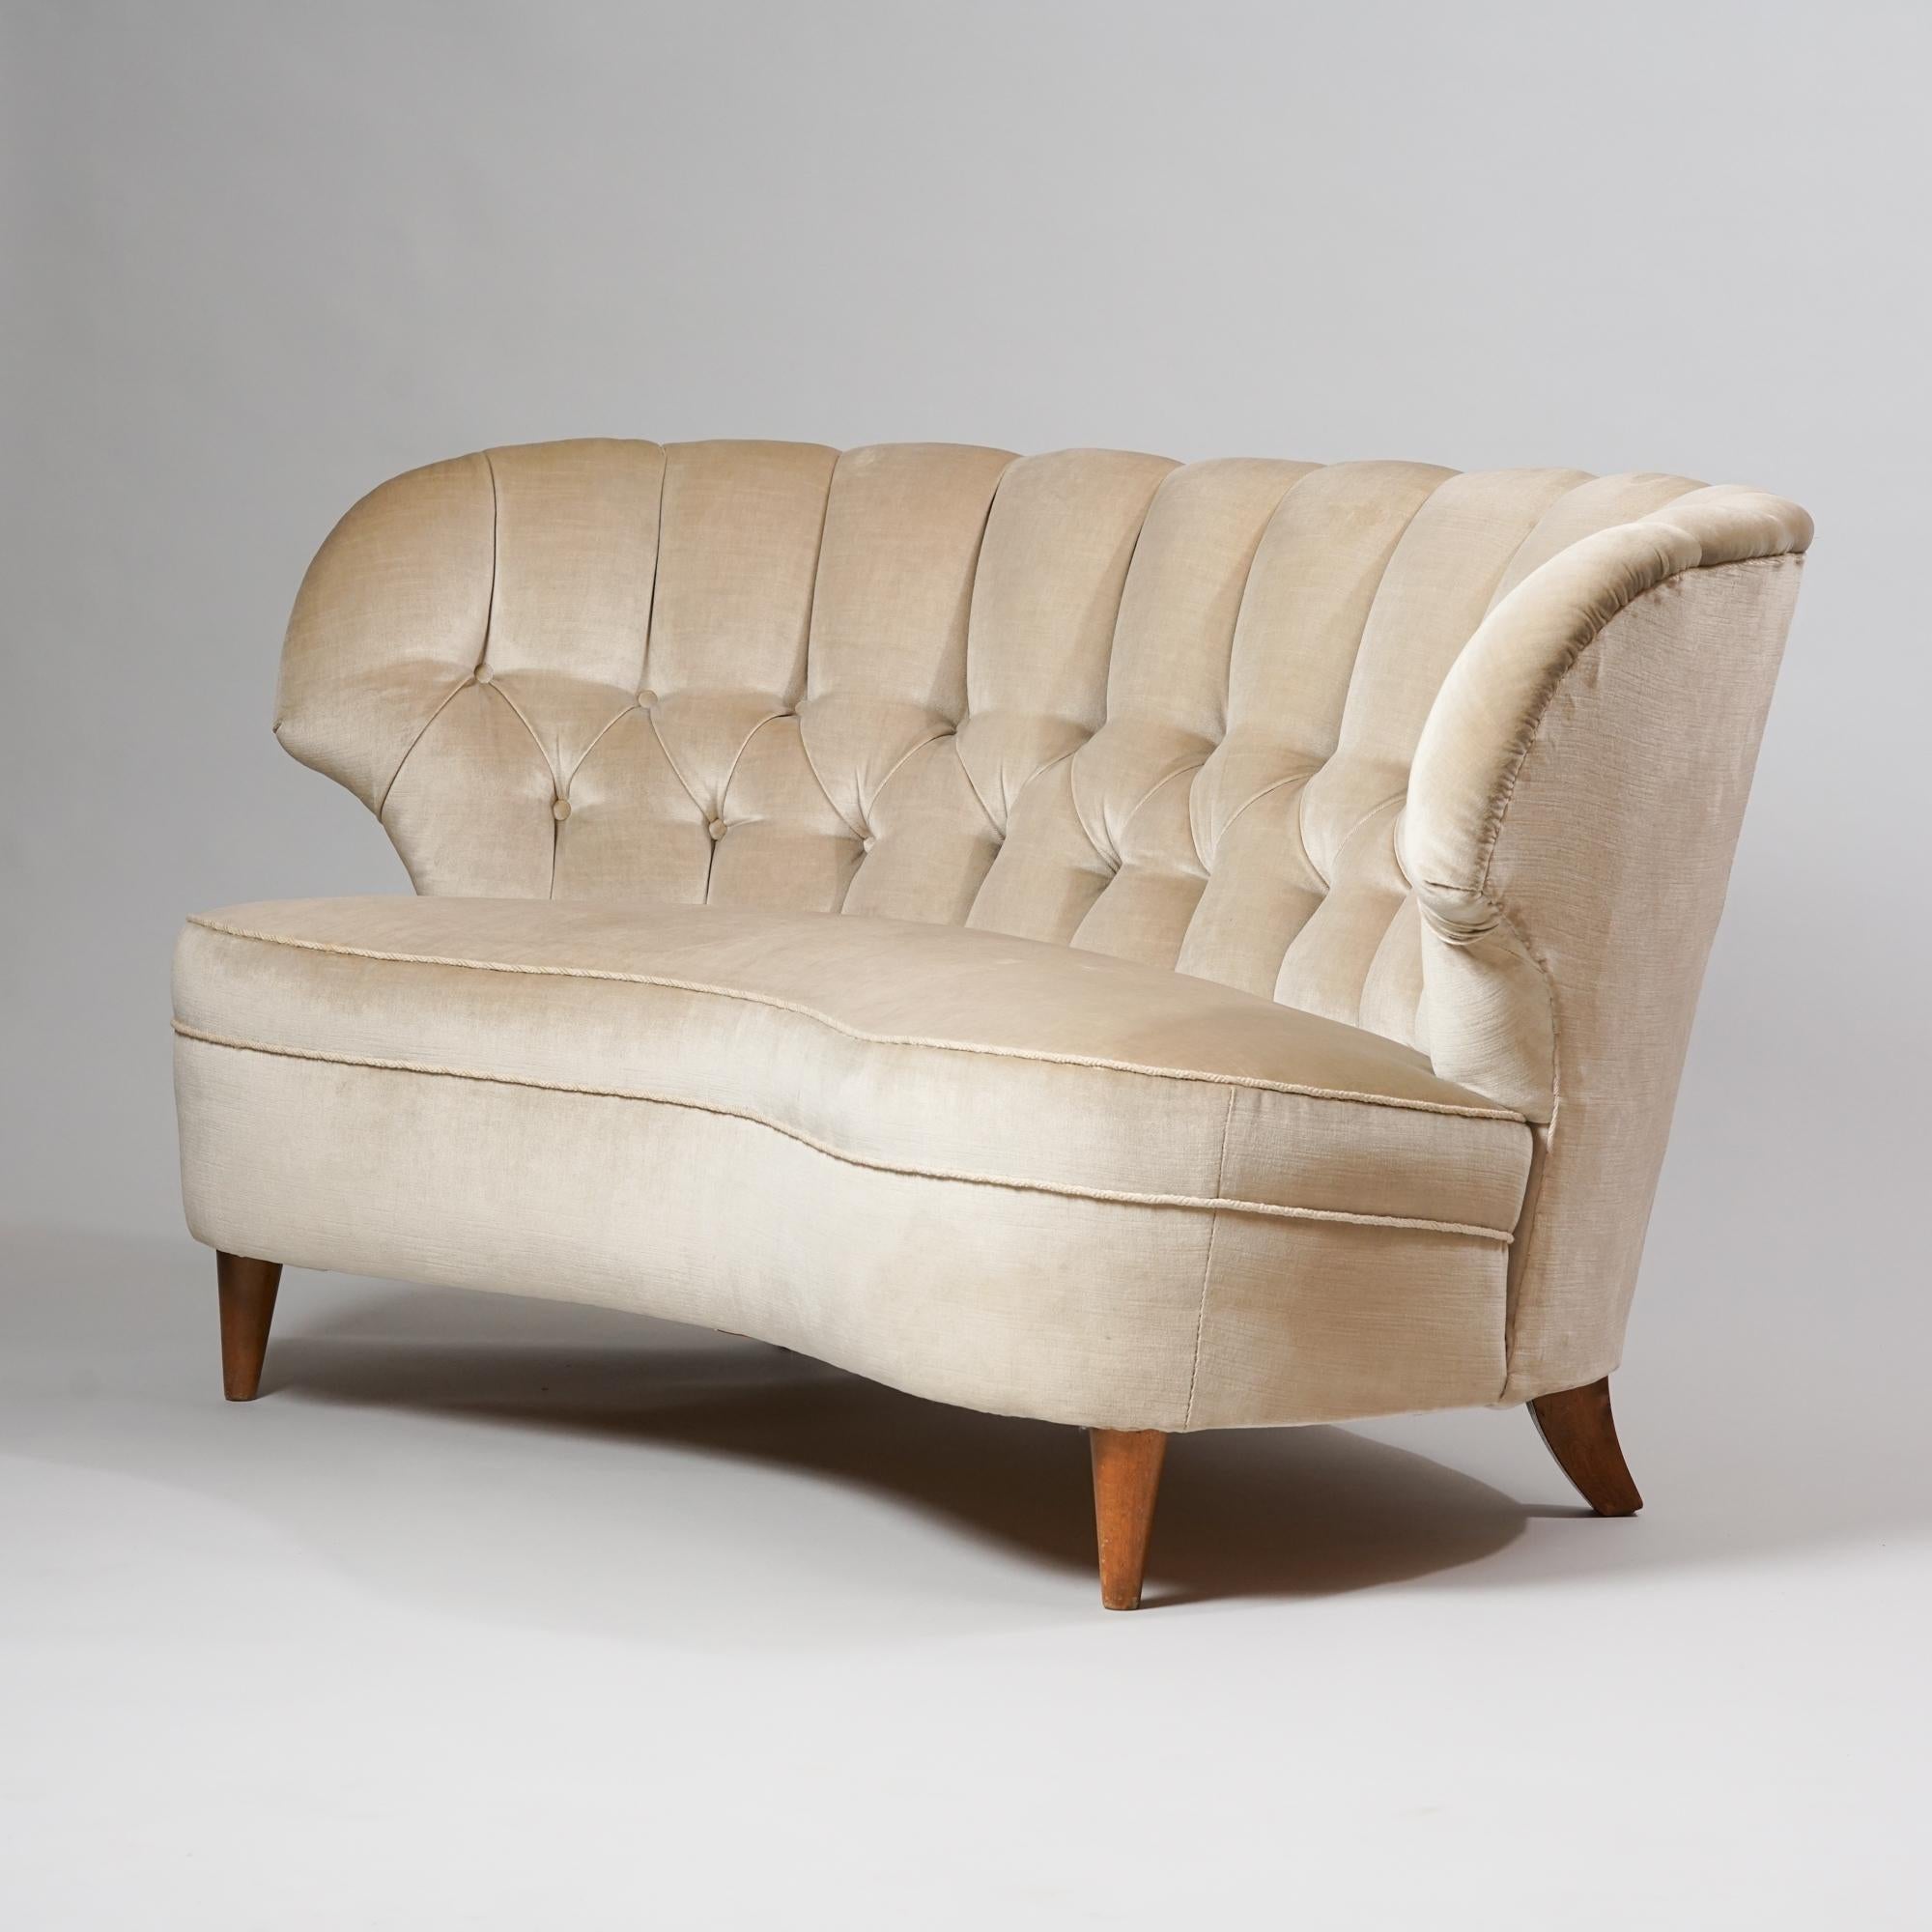 Sofa von Carl-Johan Boman aus den 1940er Jahren. Rahmen und Beine aus Birke, originaler Stoffbezug. Guter Vintage-Zustand, Patina und Abnutzung im Einklang mit Alter und Gebrauch.
